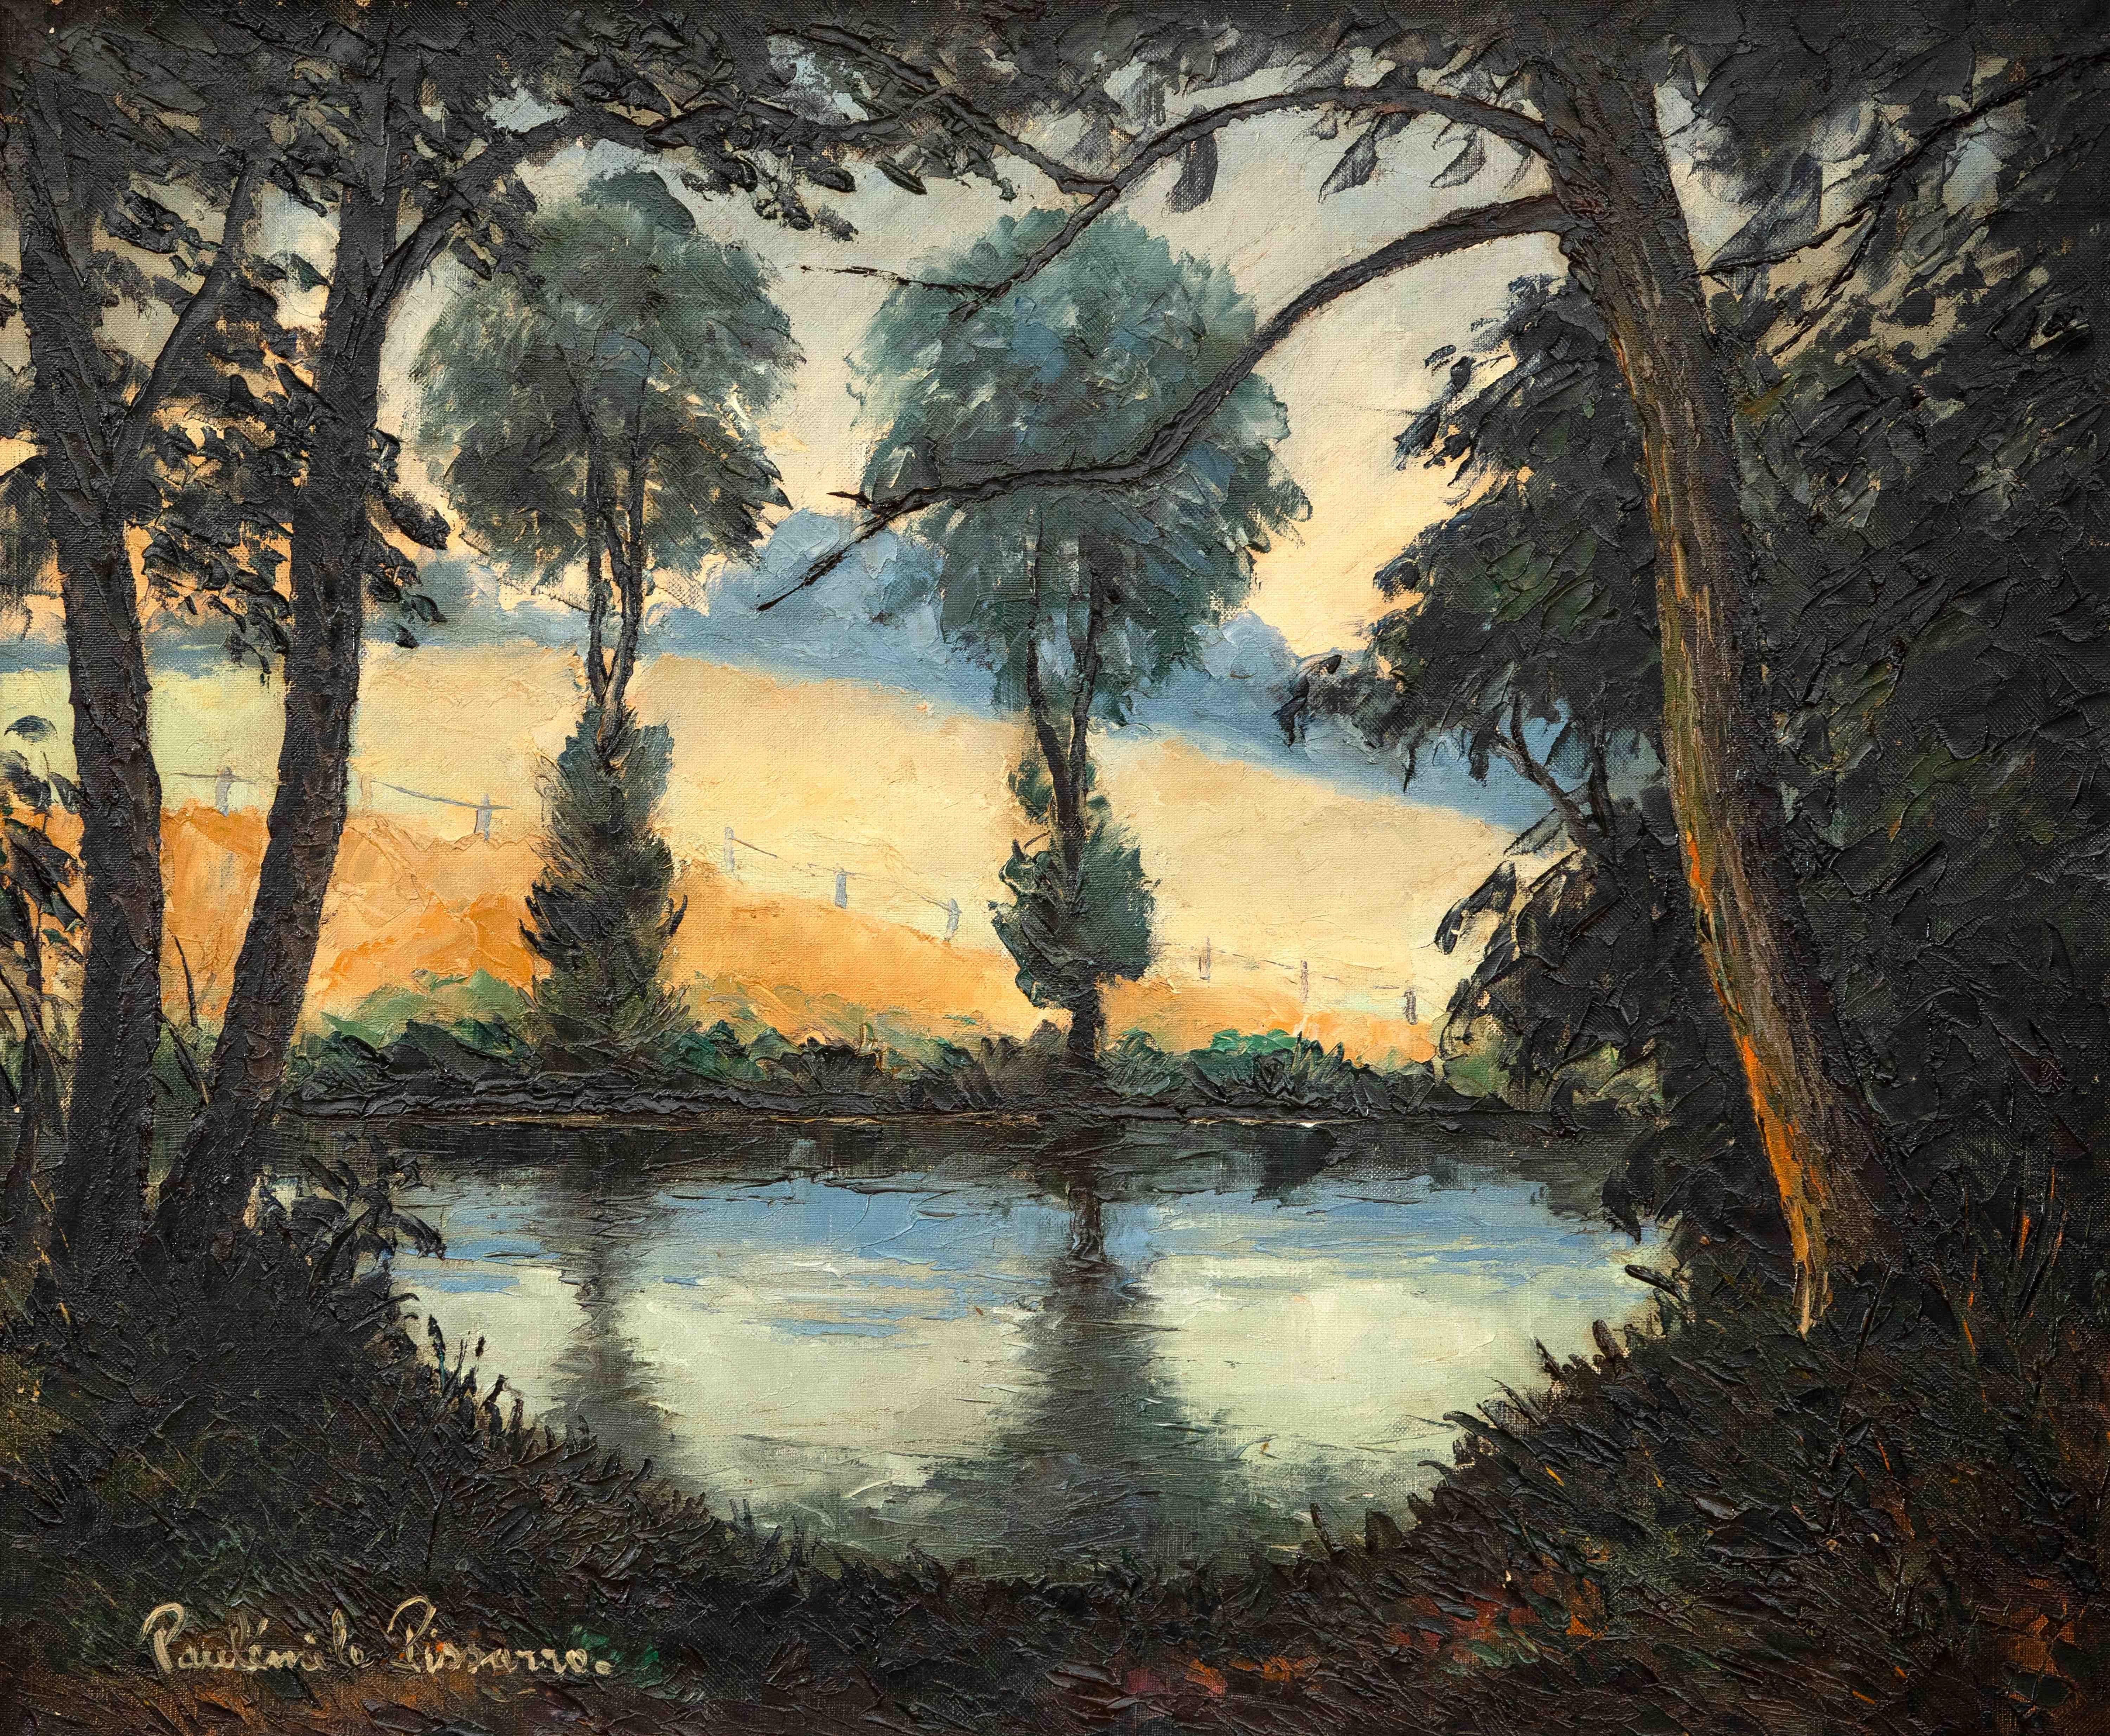 Paul Emile Pissarro Landscape Painting - Les Bords de l’Orne au Soleil Couchant by Paulémile Pissarro -Landscape painting